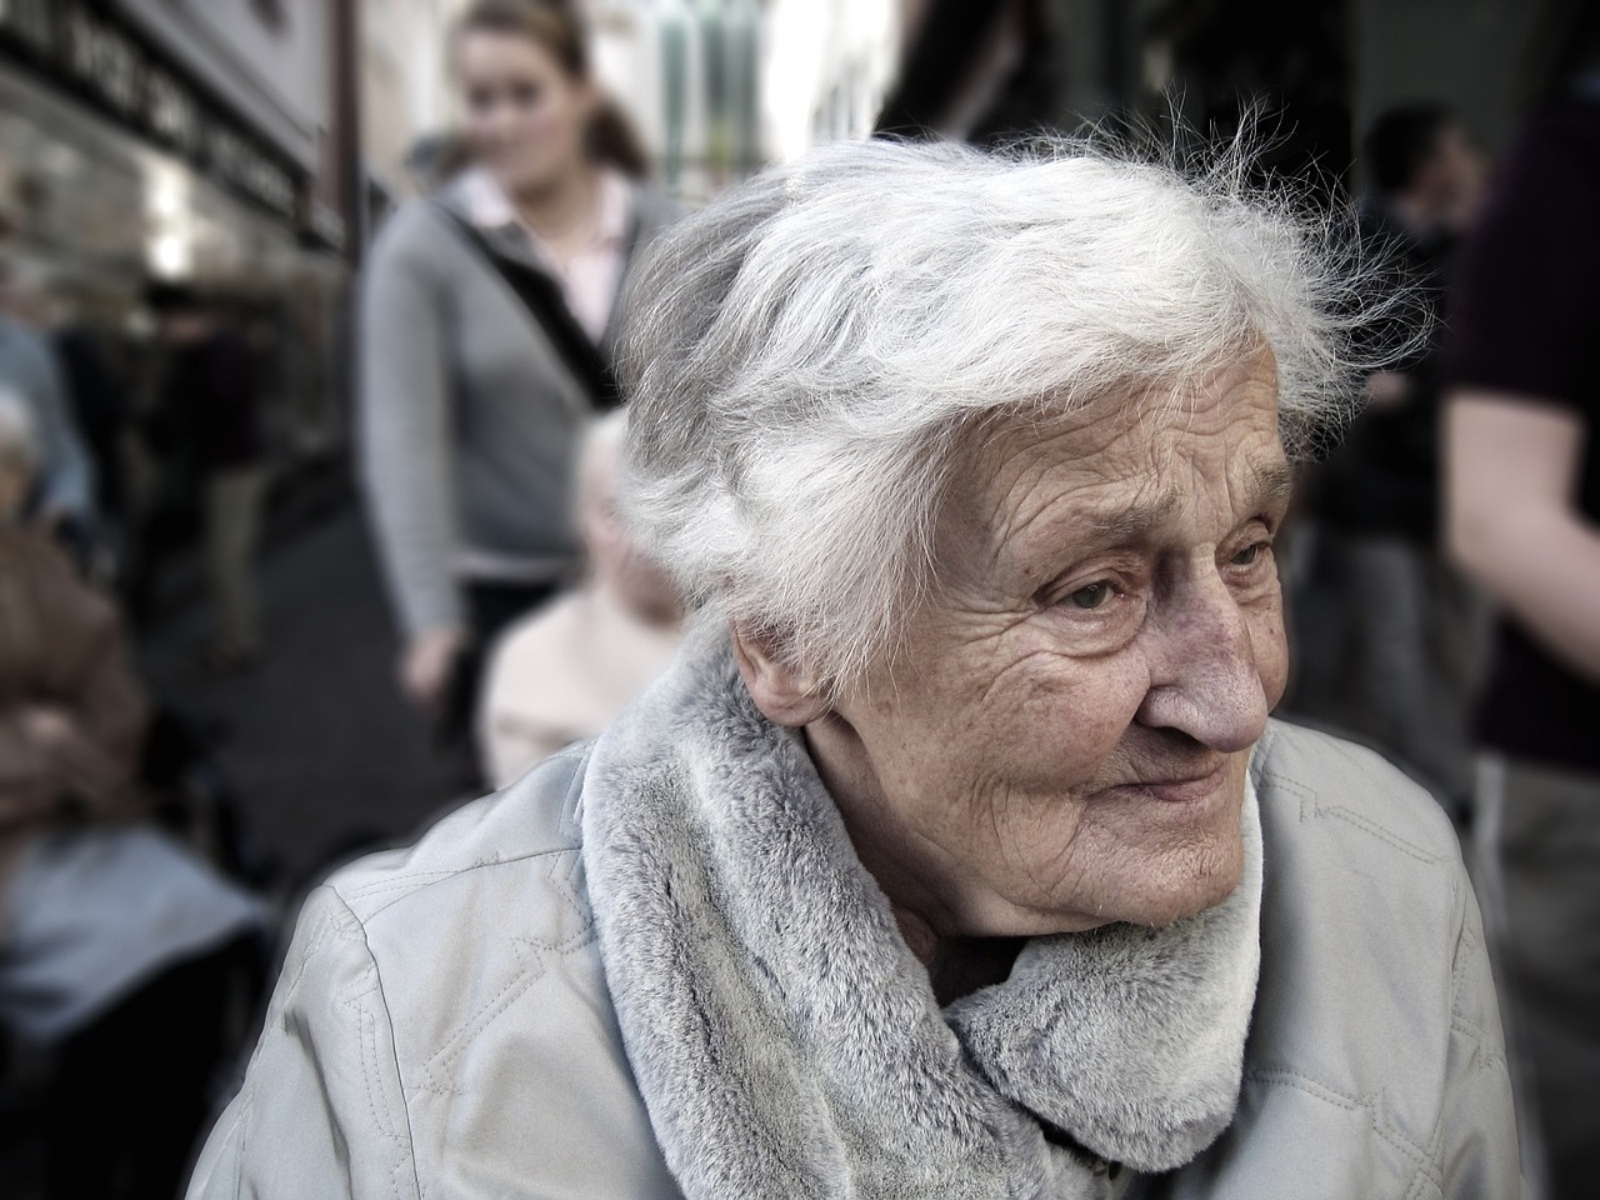 Υγειονομική περίθαλψη: Το υψηλό κόστος εμποδίζει τους ηλικιωμένους να αναζητήσουν φροντίδα